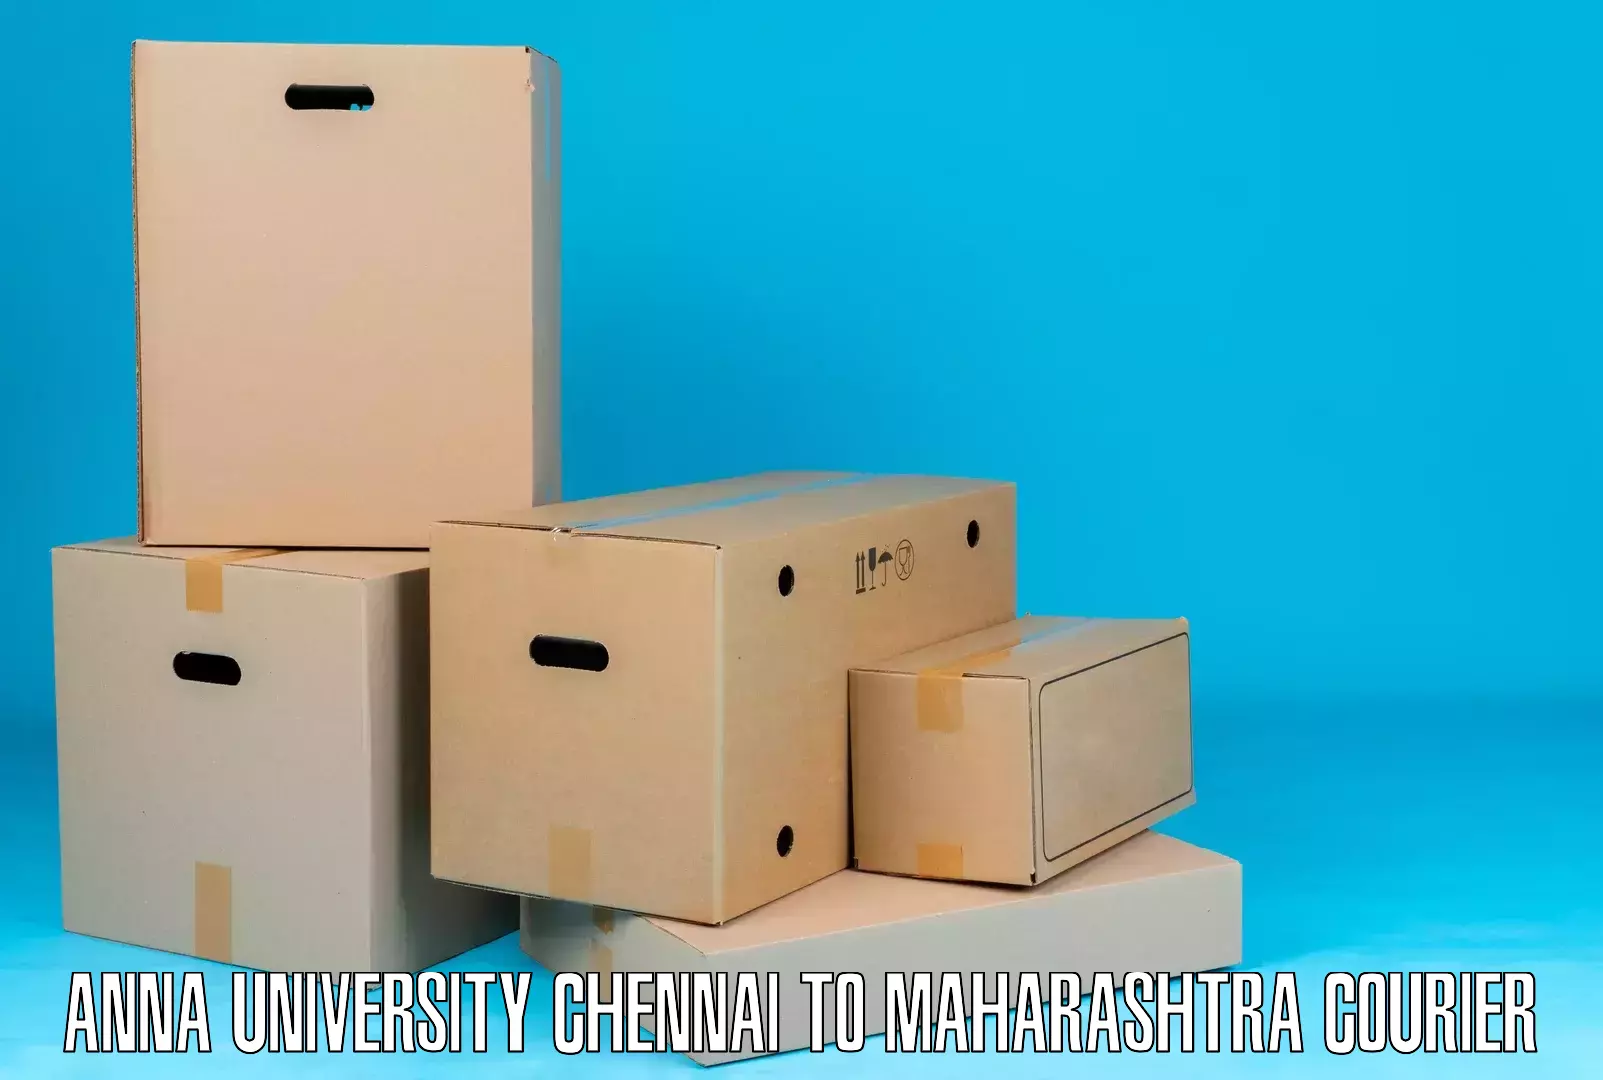 User-friendly courier app Anna University Chennai to Maharashtra